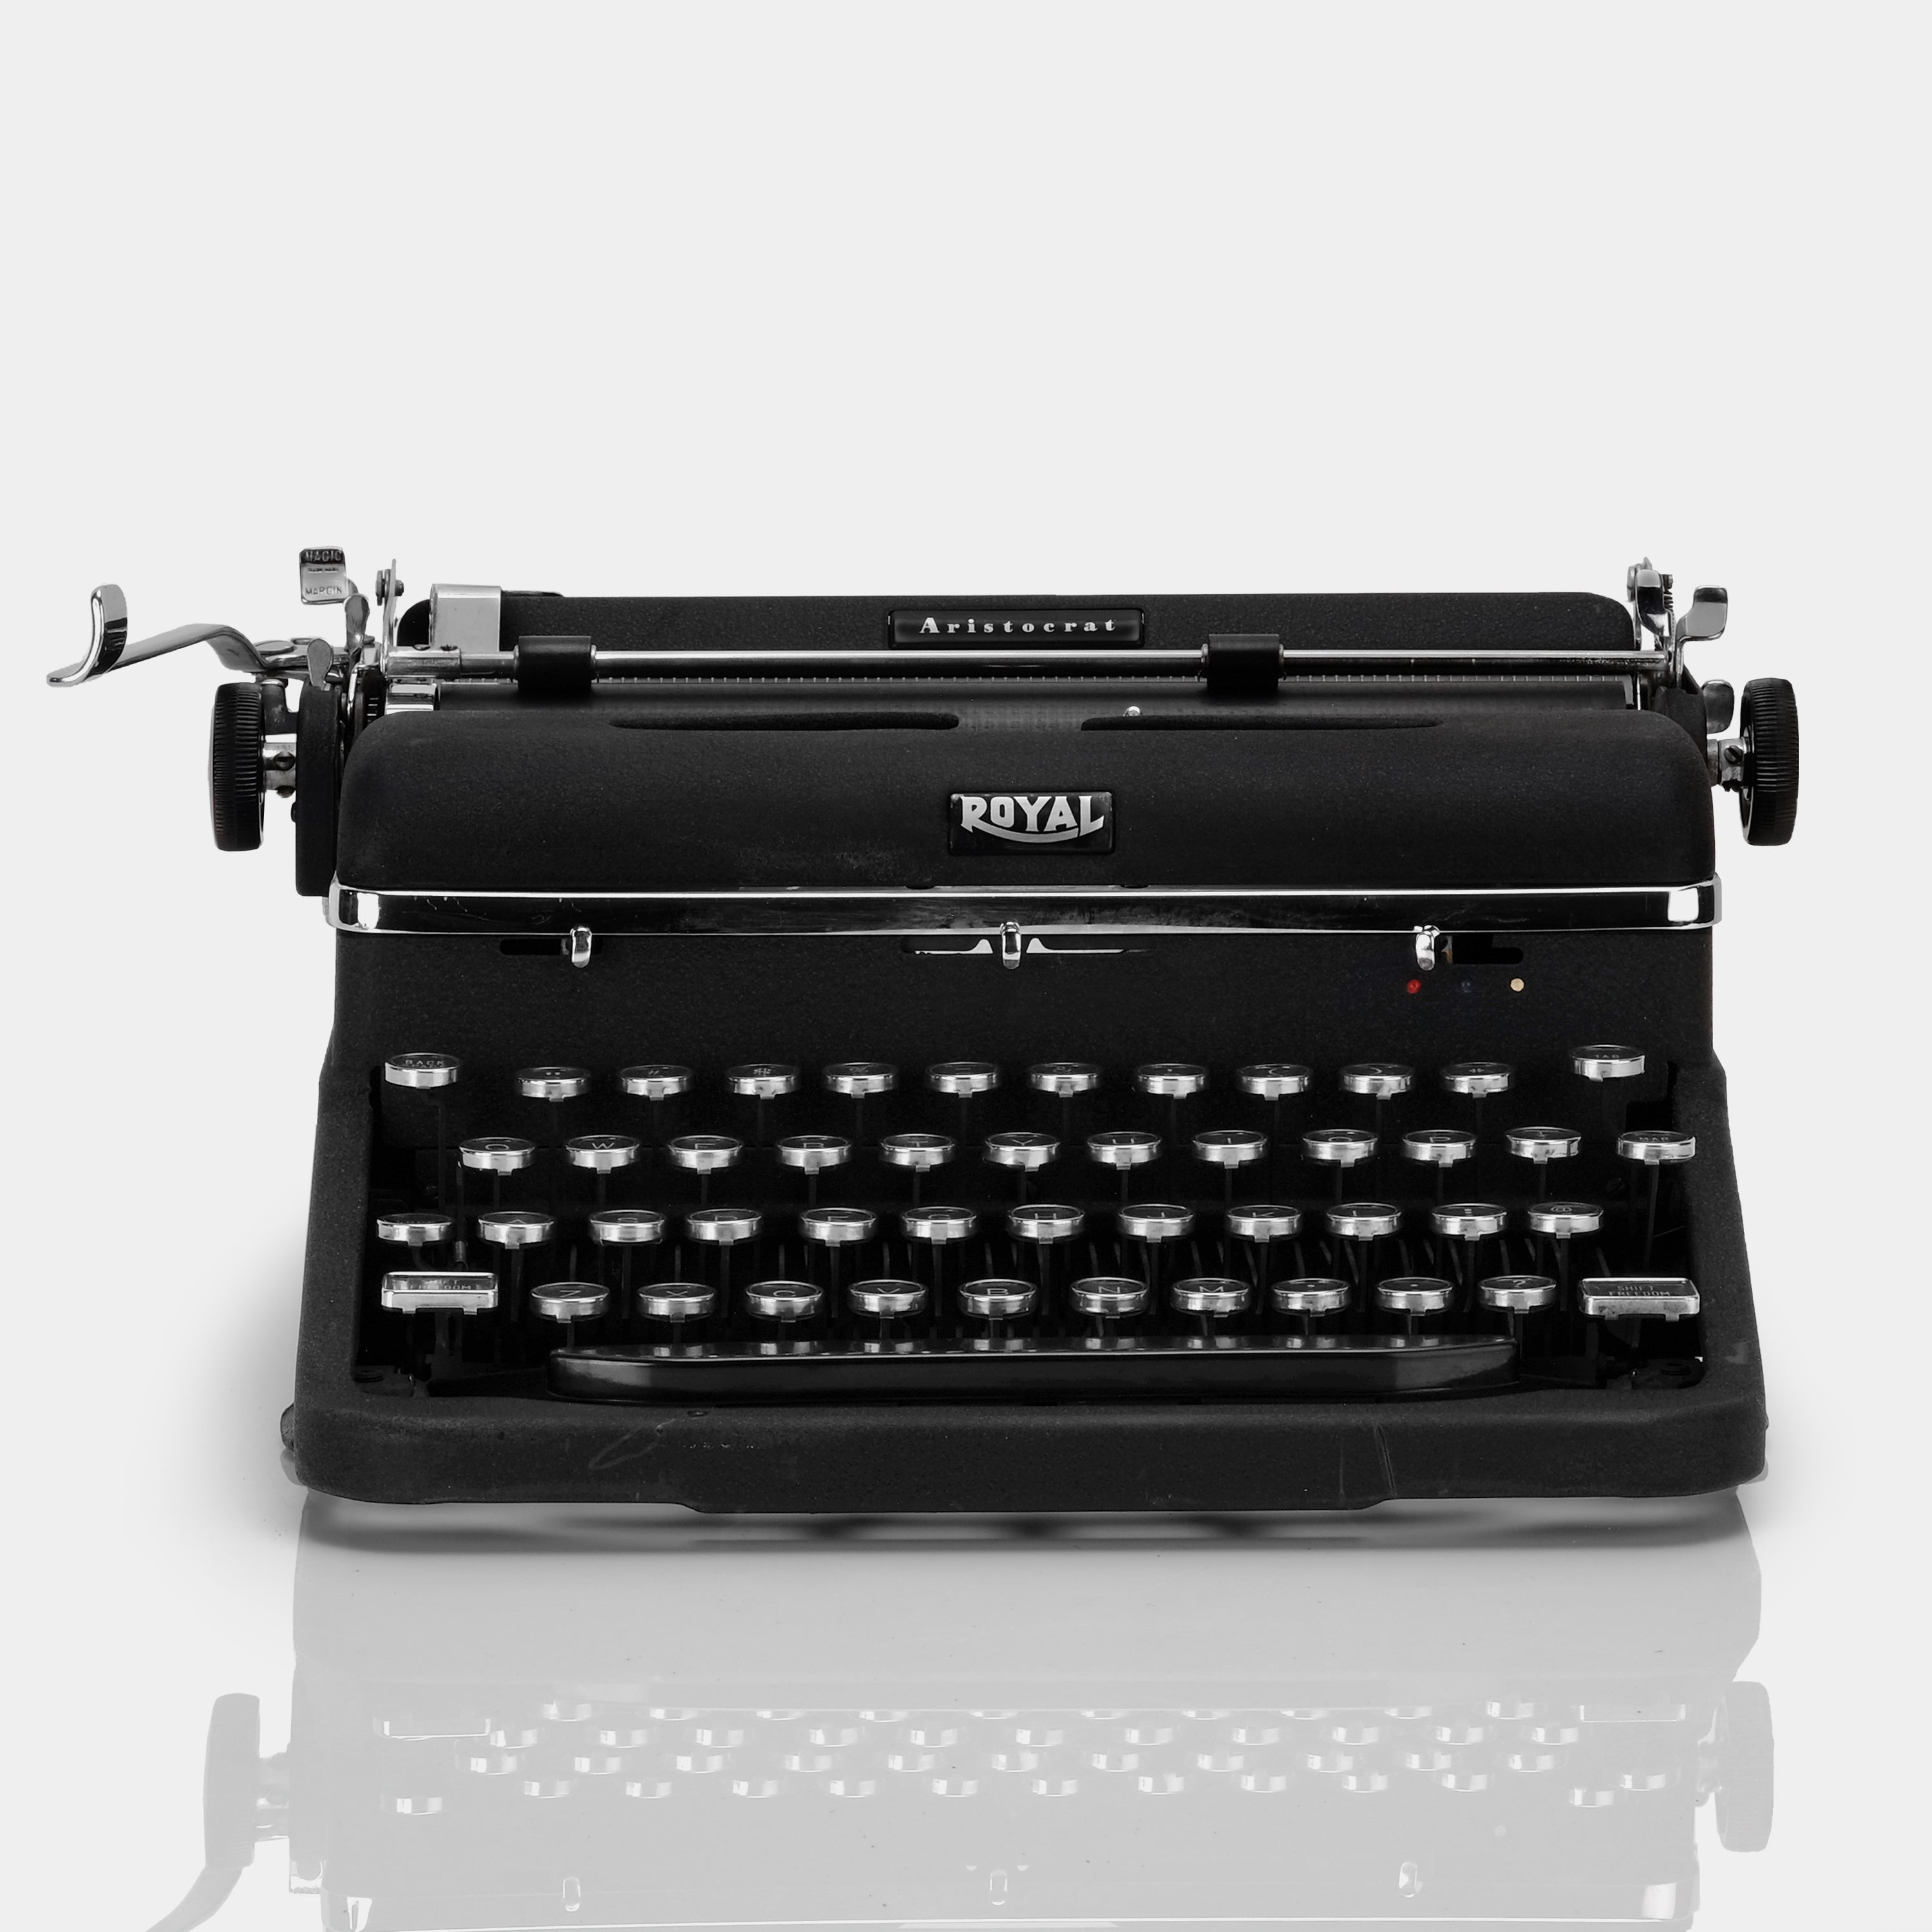 Royal Aristocrat Black Manual Typewriter